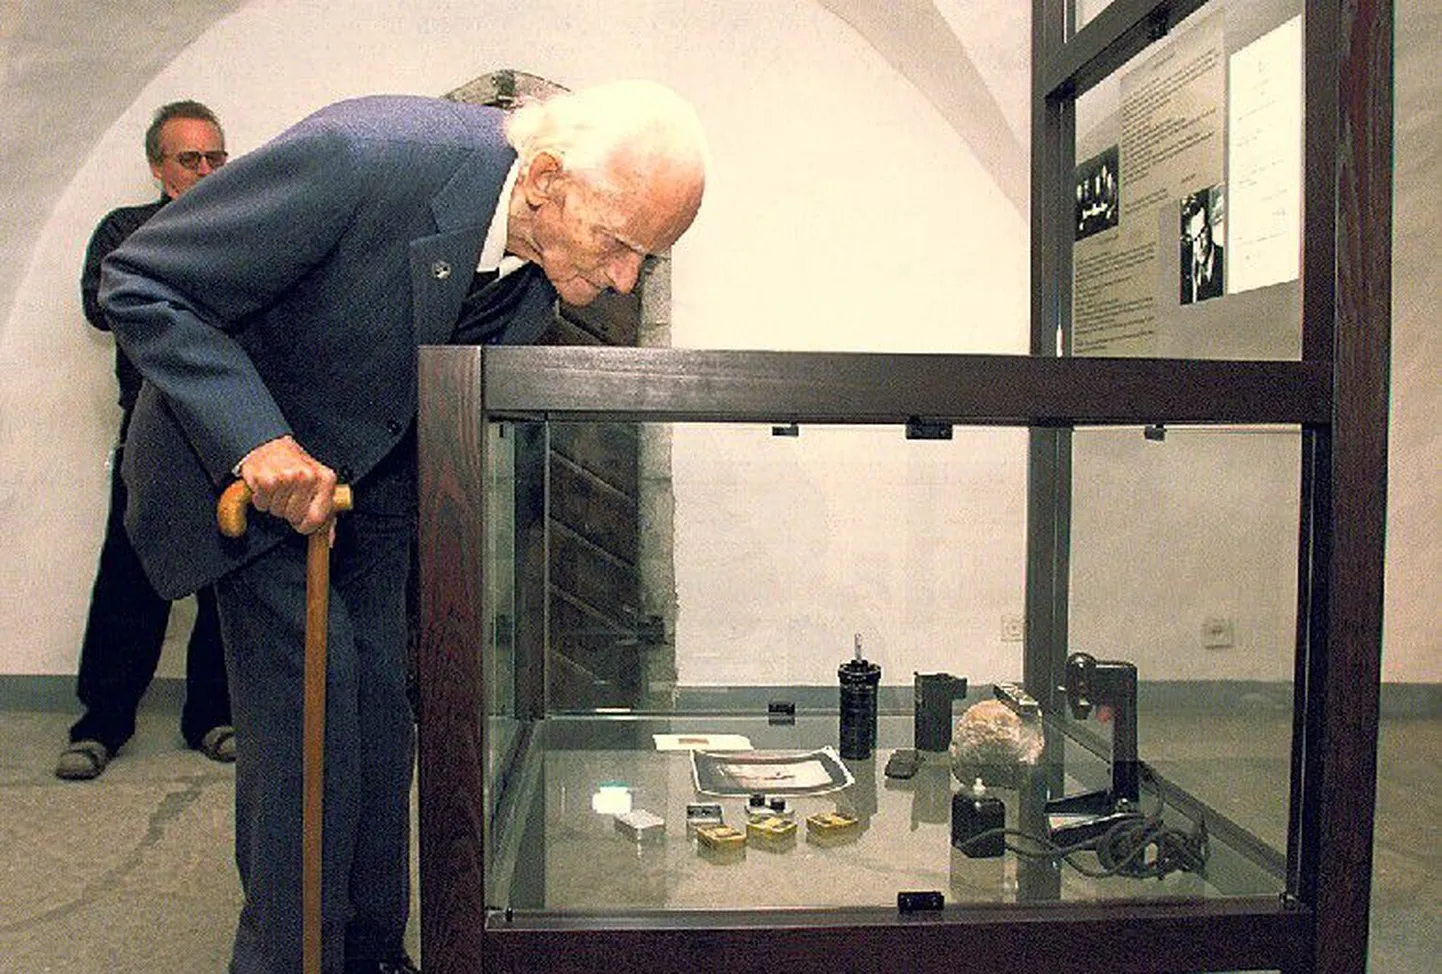 Создатель миниатюрной фотокамеры: изобретатель фотоаппарата Minox Вальтер Цапп 
в 2000 году побывал в Эстонии, где посетил Музей таллиннской ратуши, в котором хранится его первая фотокамера. Цапп умер в 2003 году.